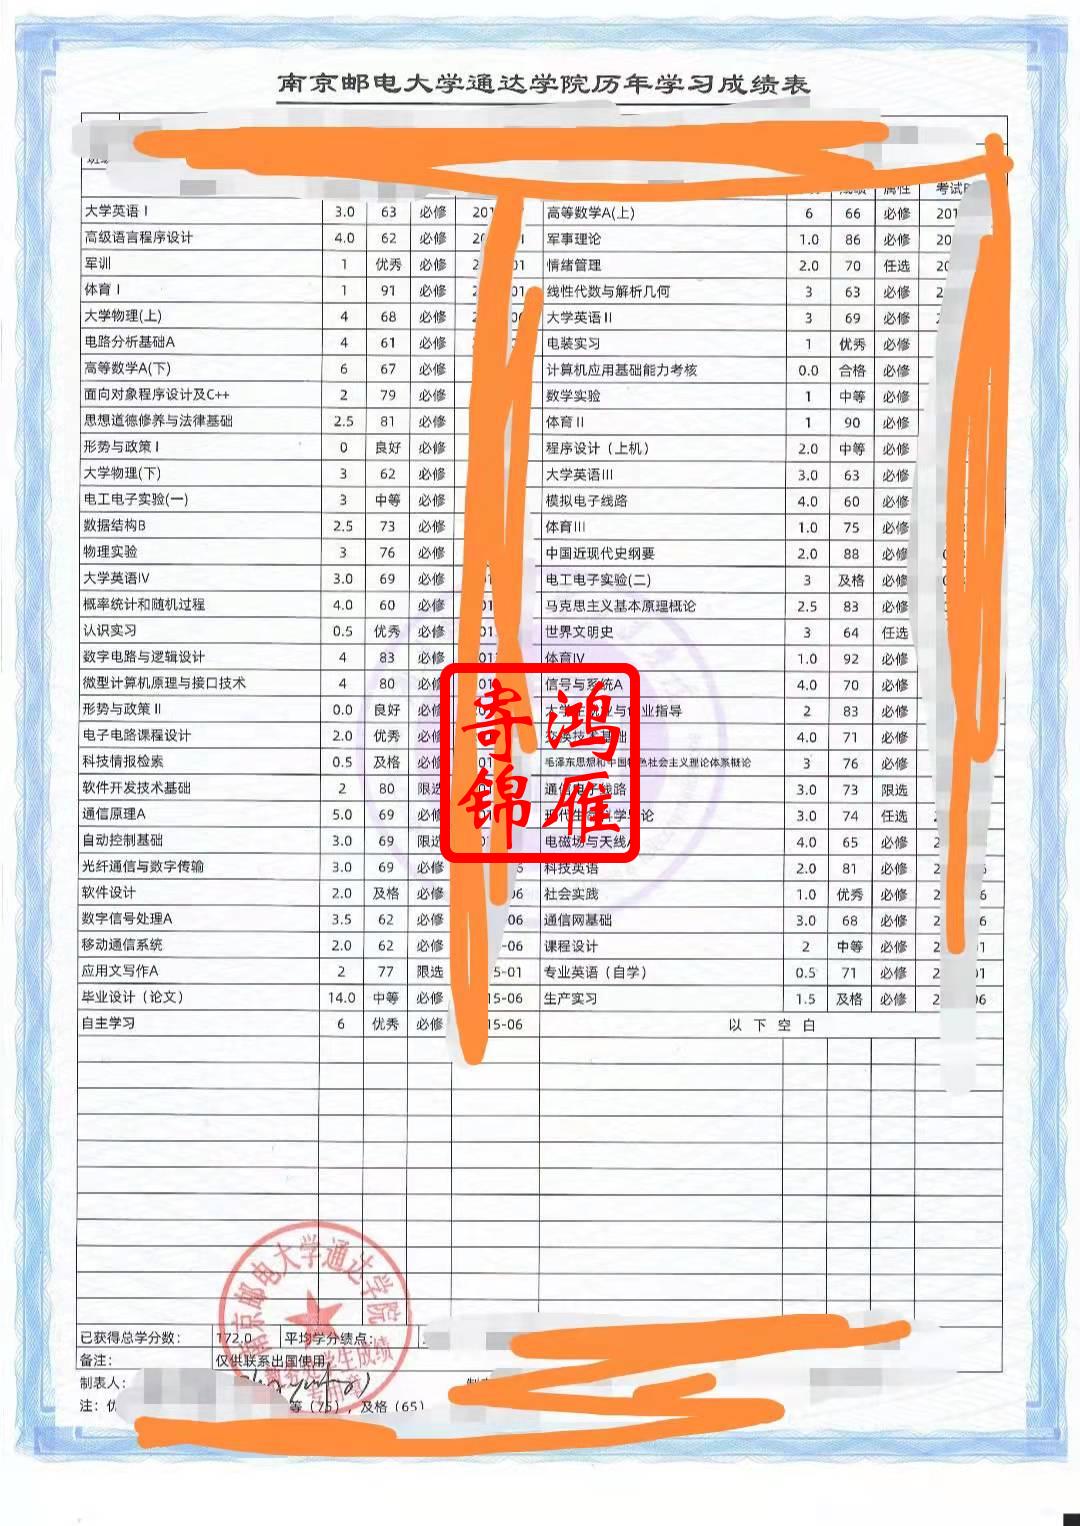 南京邮电大学通达学院中文成绩单打印代办案例.jpg